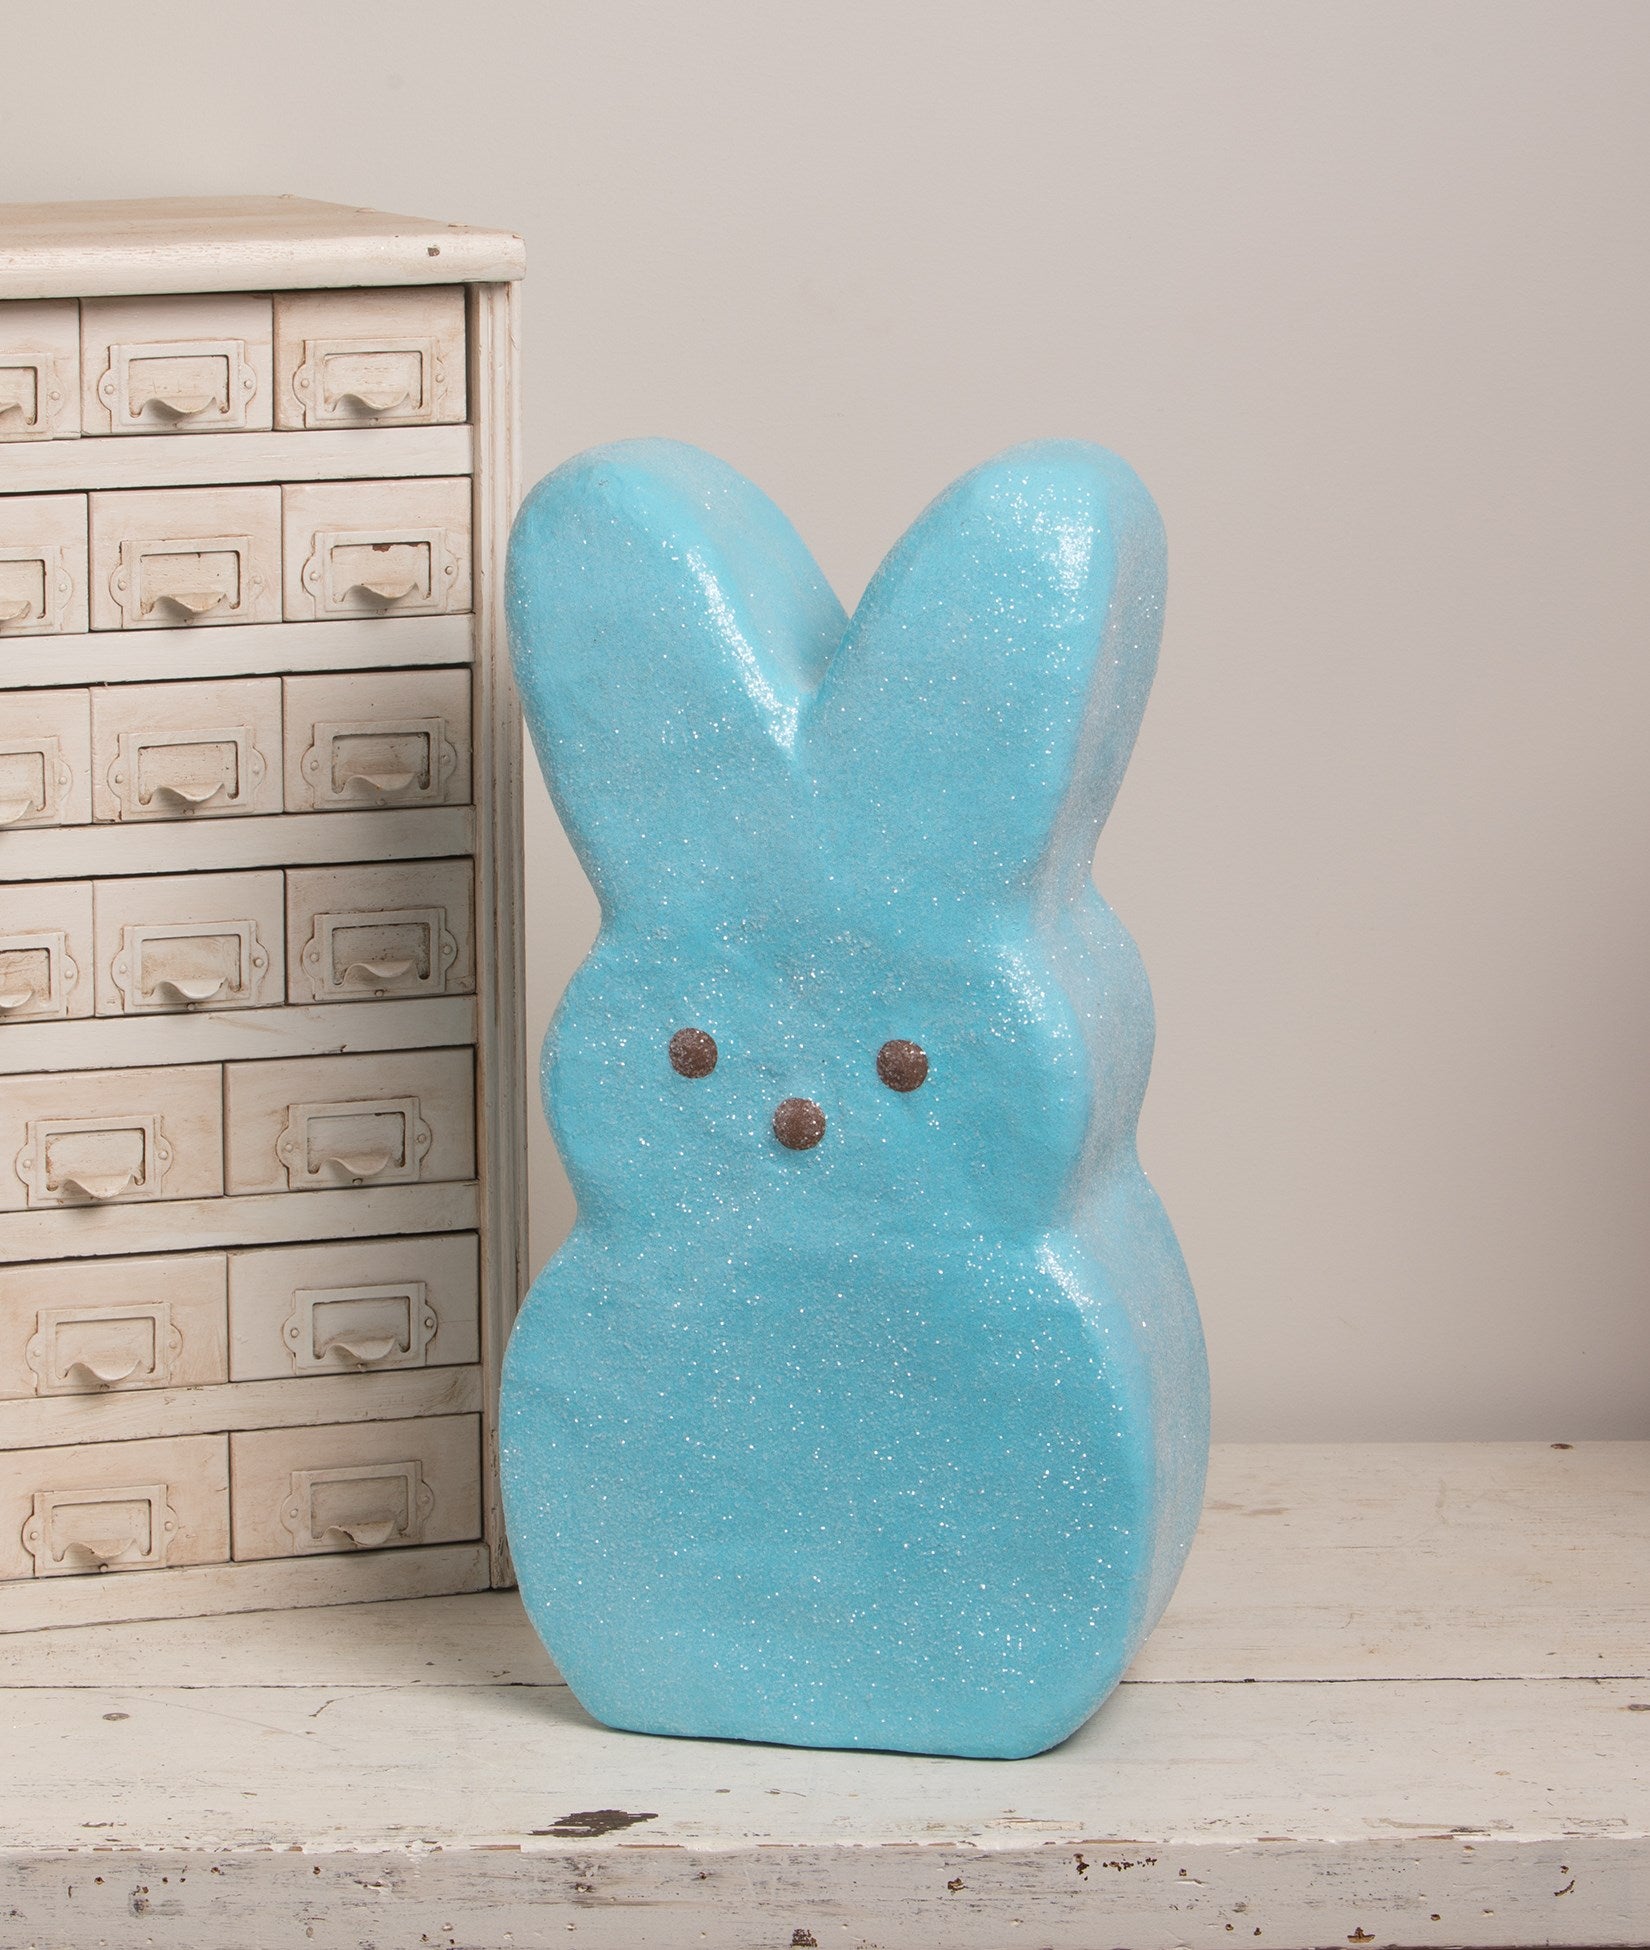 Peeps Large Blue Bunny, 18.5" Paper Mache